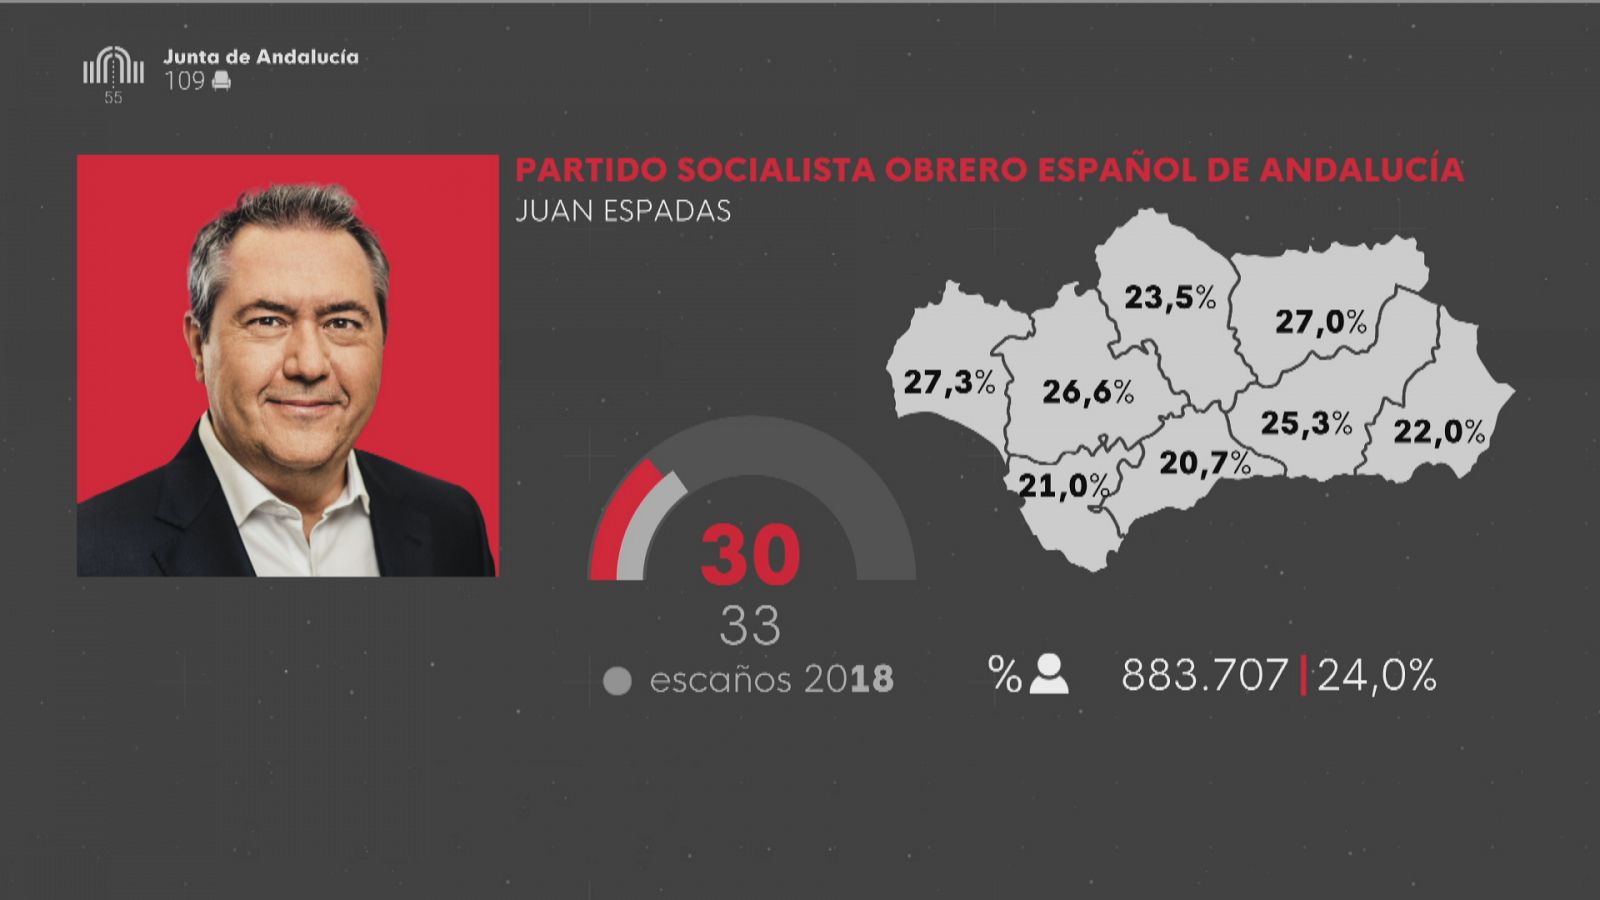 PSOE tras las elecciones andaluzas 19J